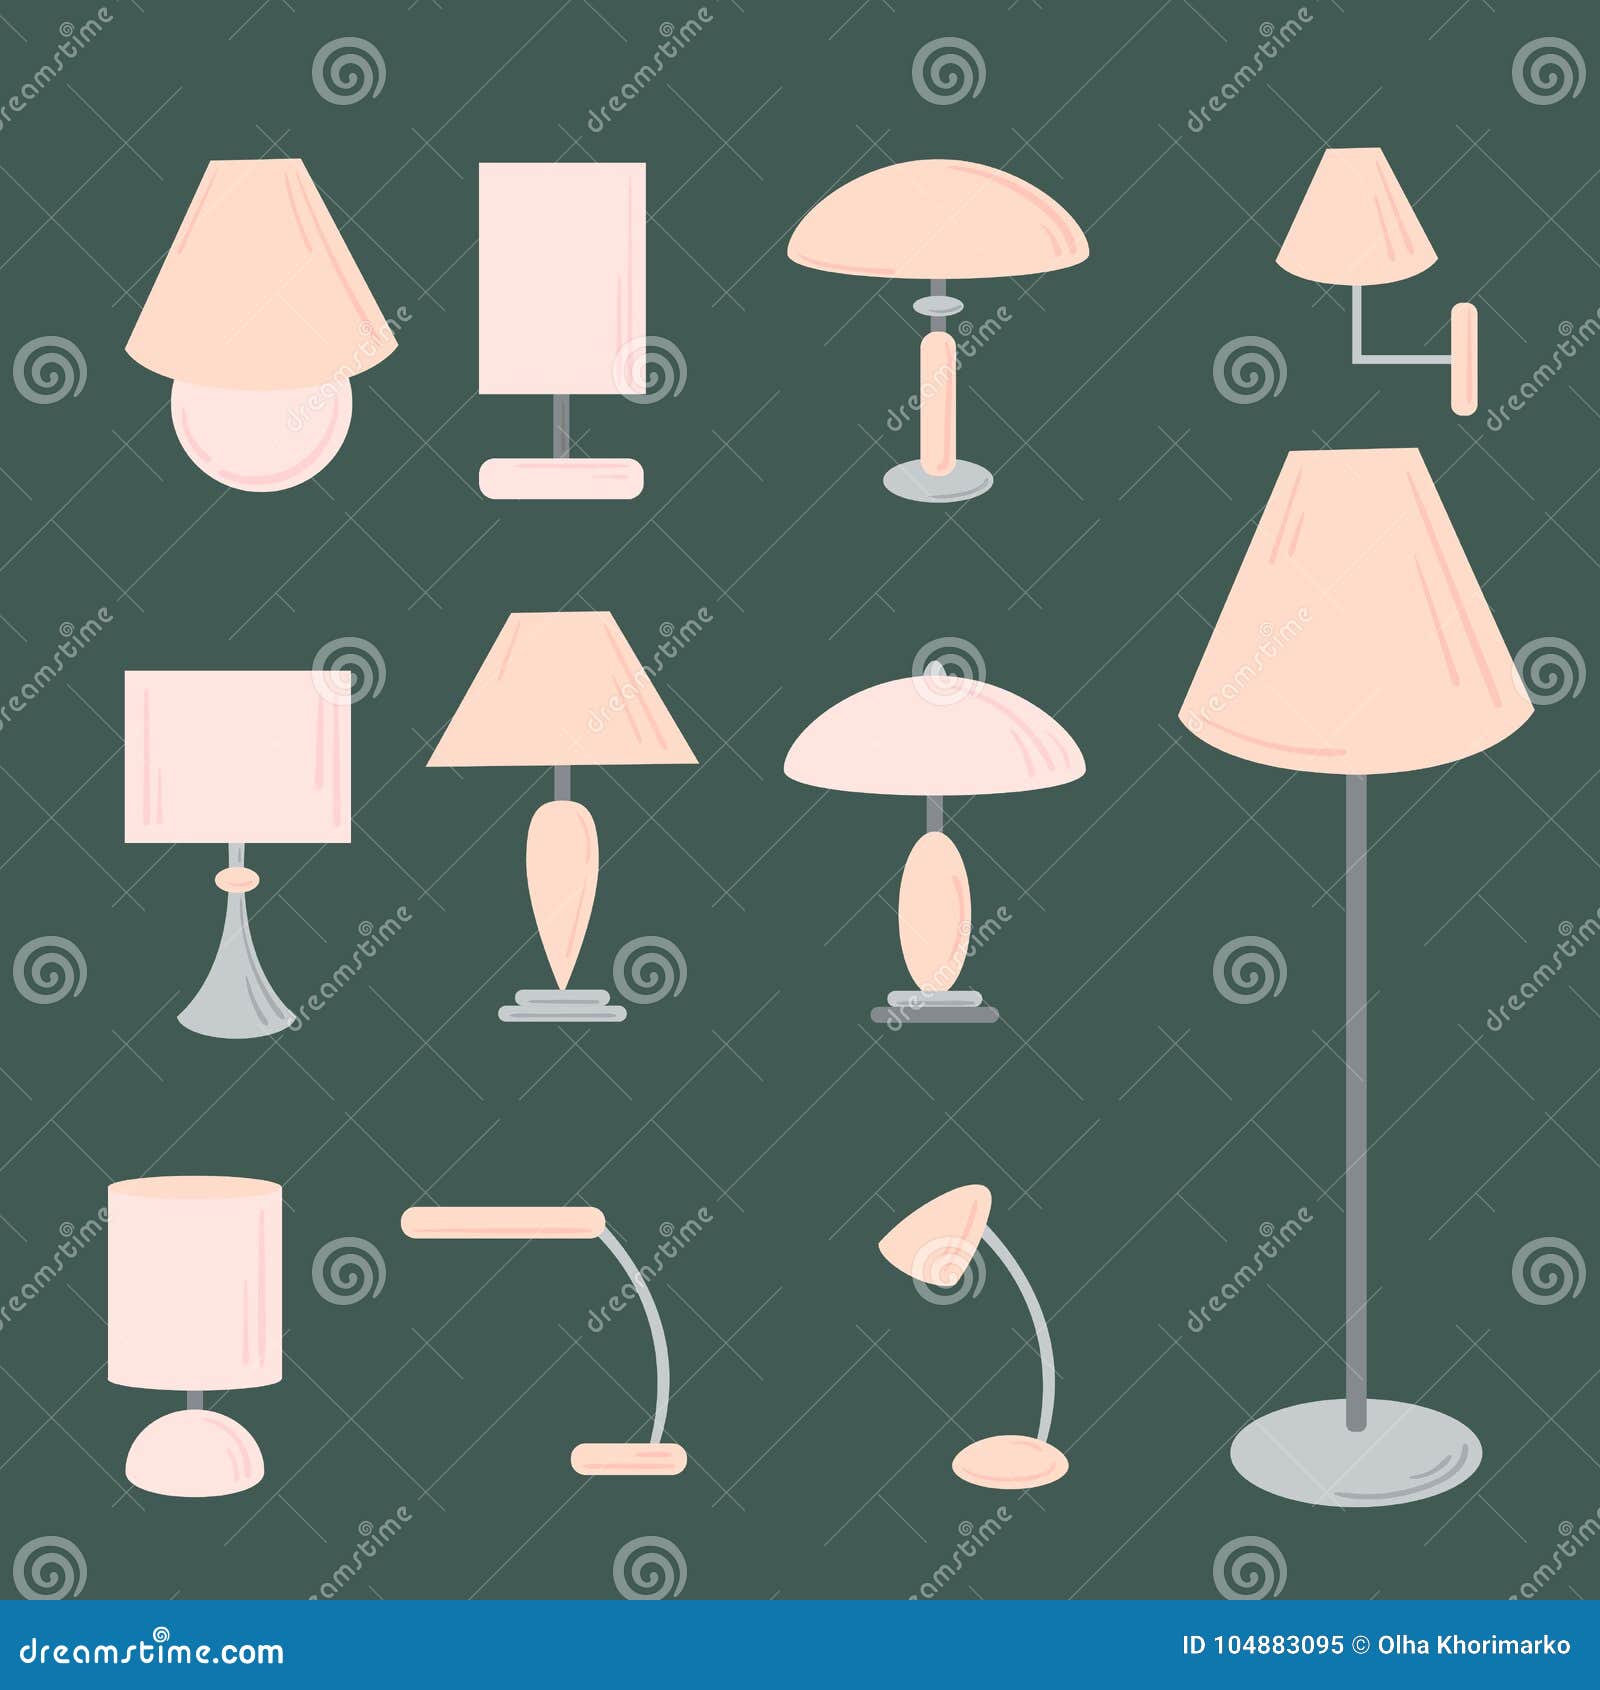 Vector Set Of Different Types Of Indoor Lighting Stock